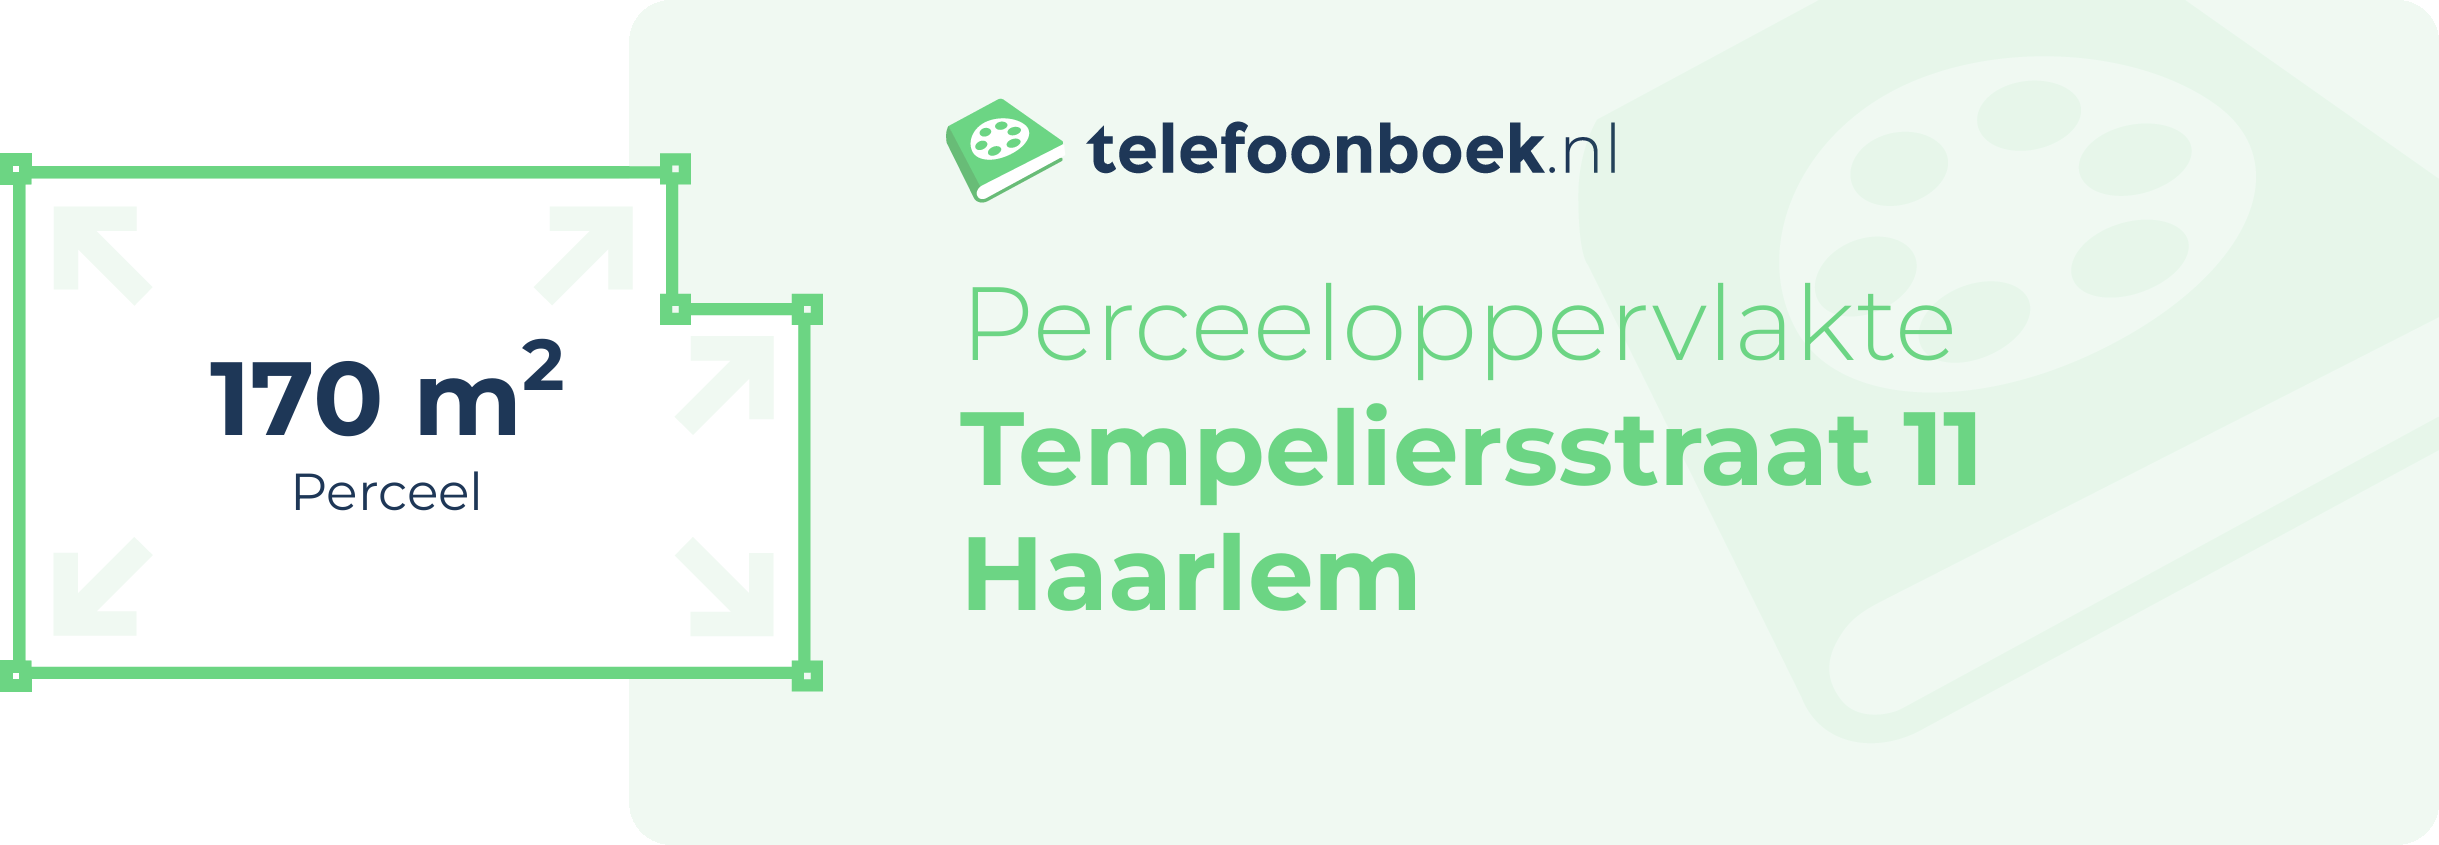 Perceeloppervlakte Tempeliersstraat 11 Haarlem